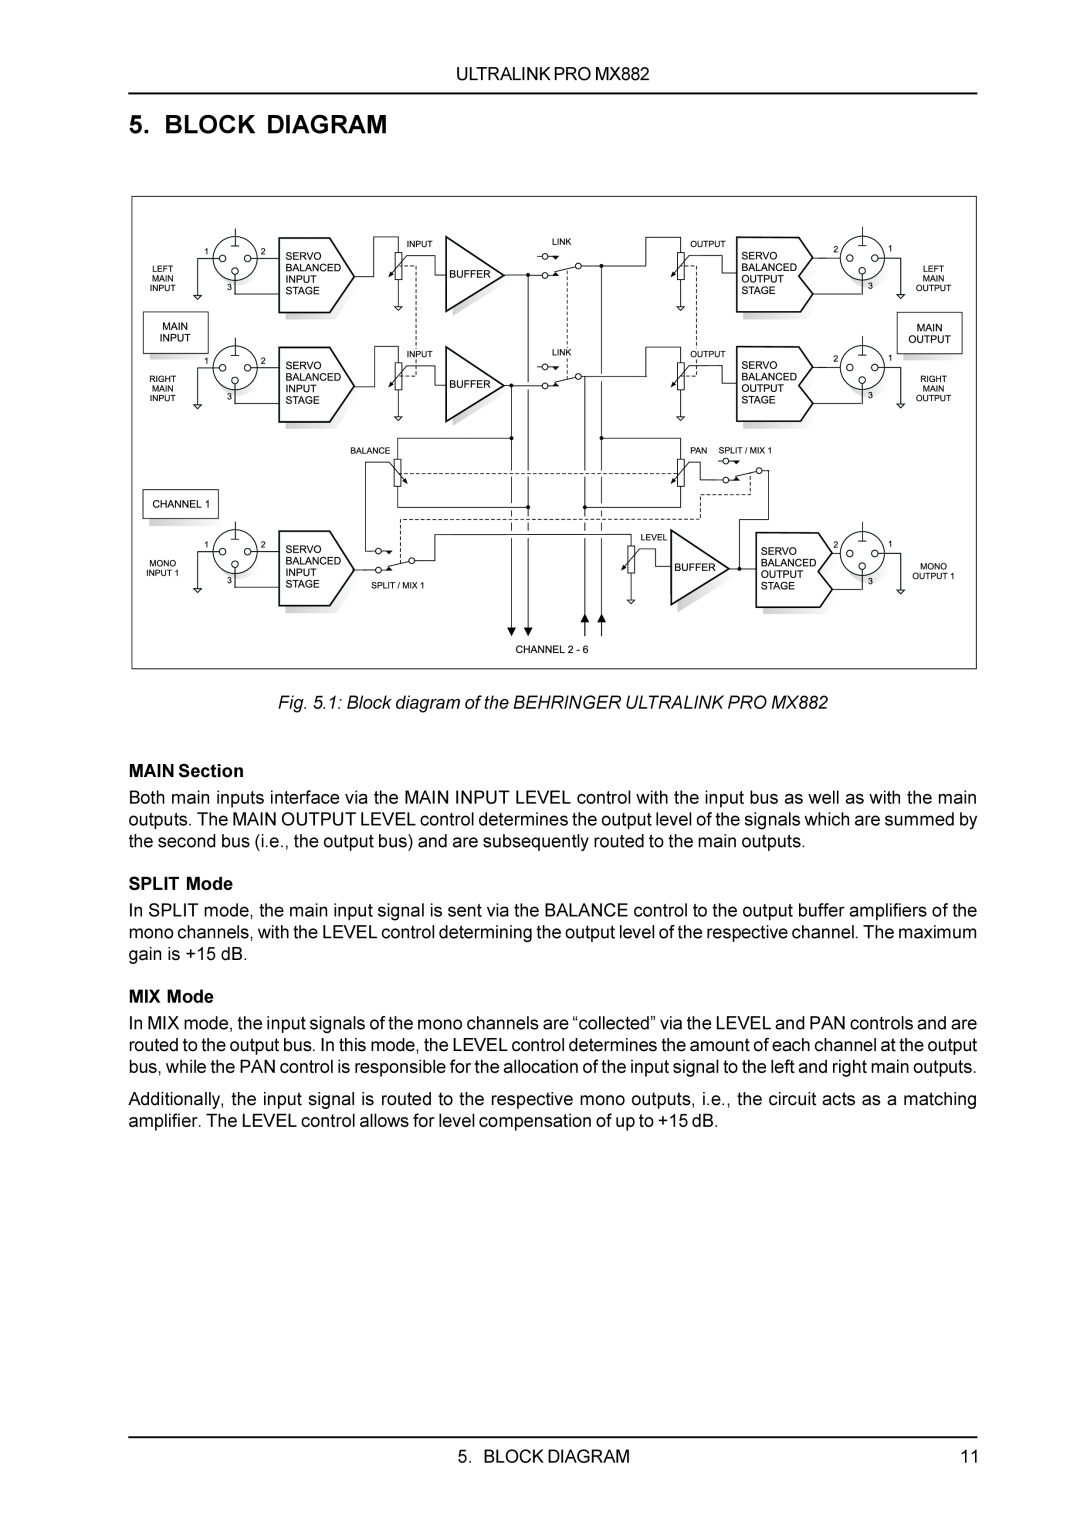 Behringer MX882 manual Block Diagram 